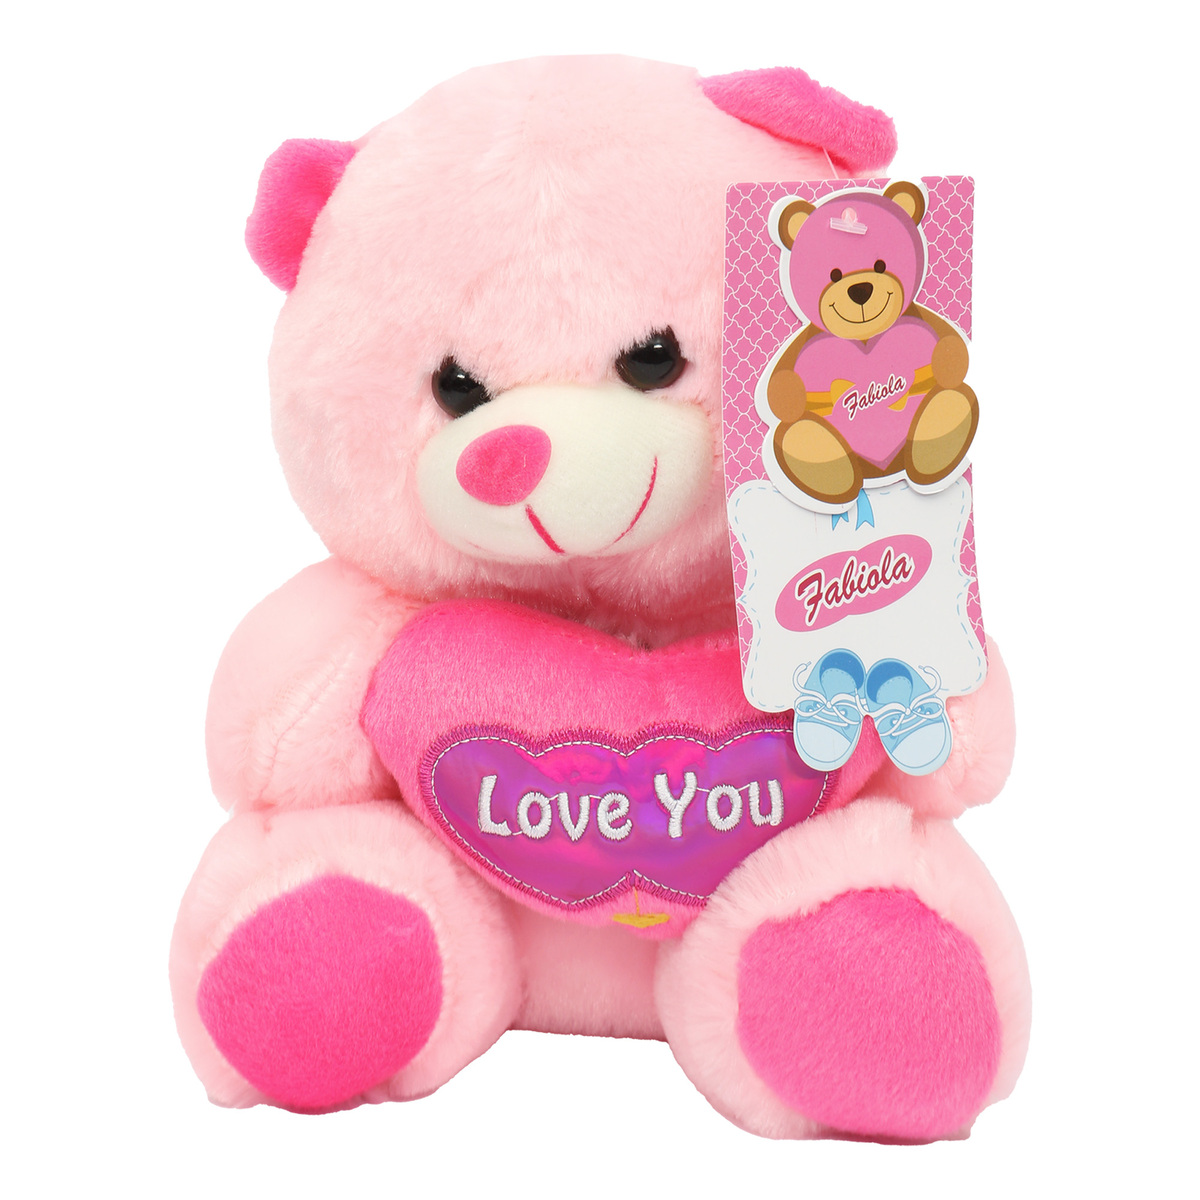 Fabiola Teddy Bear Plush With Heart 20cm CJ3601 Assorted